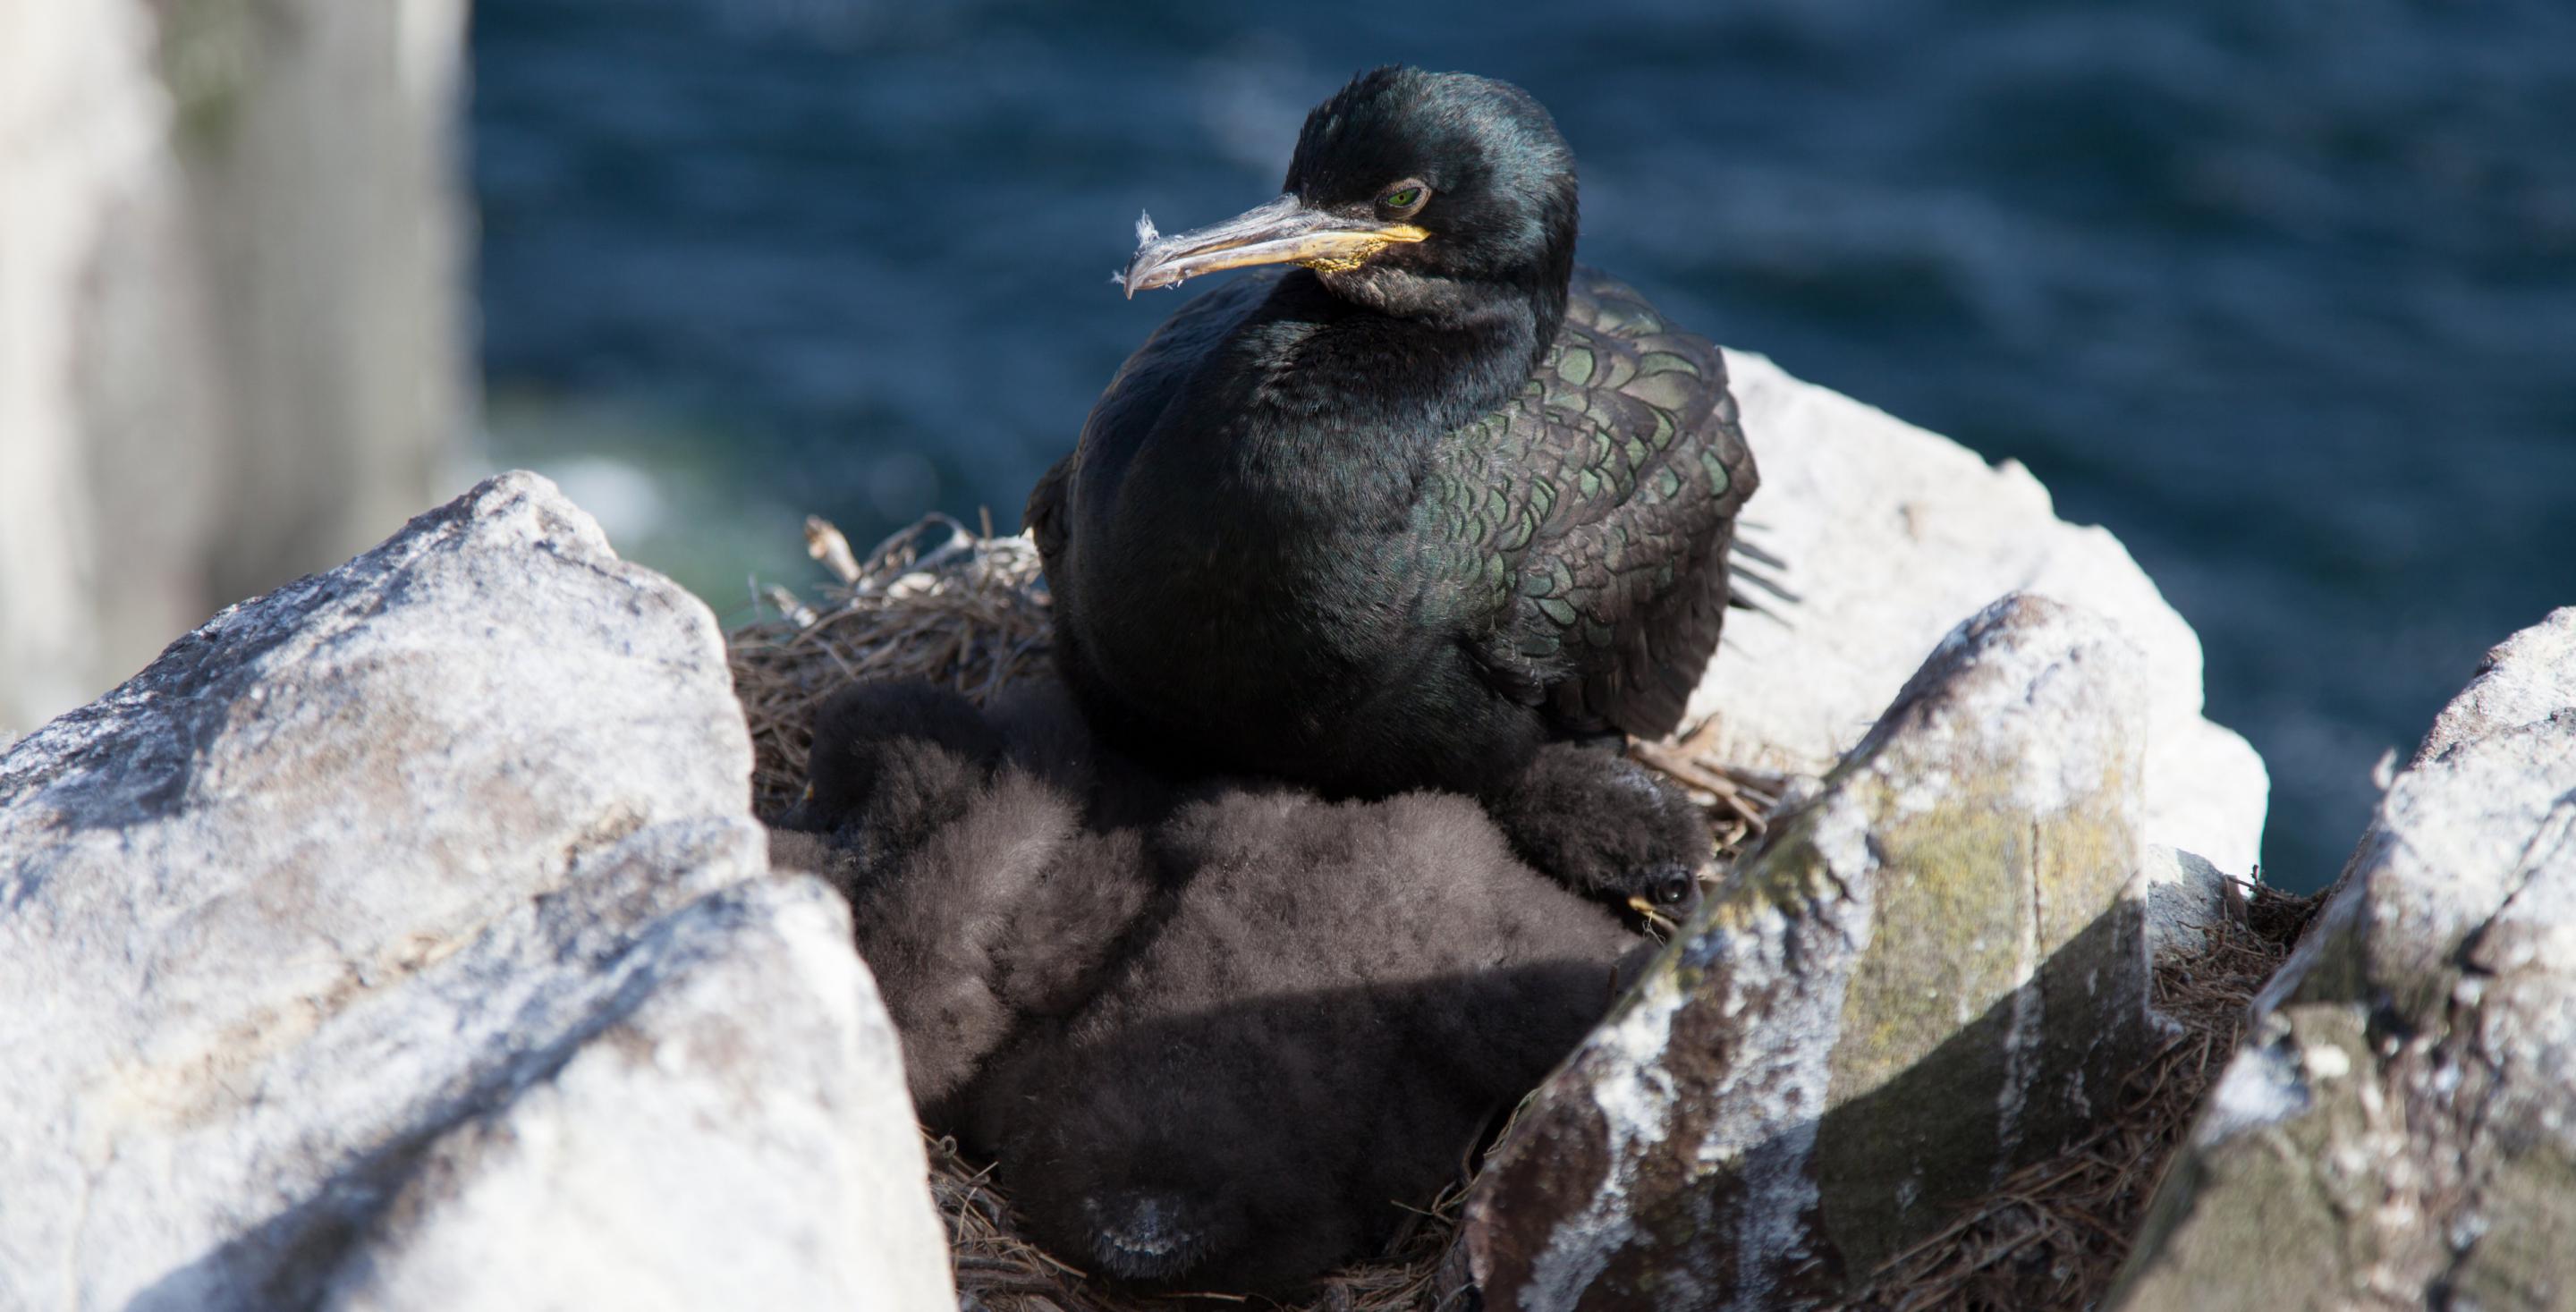 Les oiseaux sont nombreux aux iles de Farne qui est une zone protégée depuis 1945. Grand Cormoran (Phalacrocorax carbo) ou Cormoran commun - Angleterre